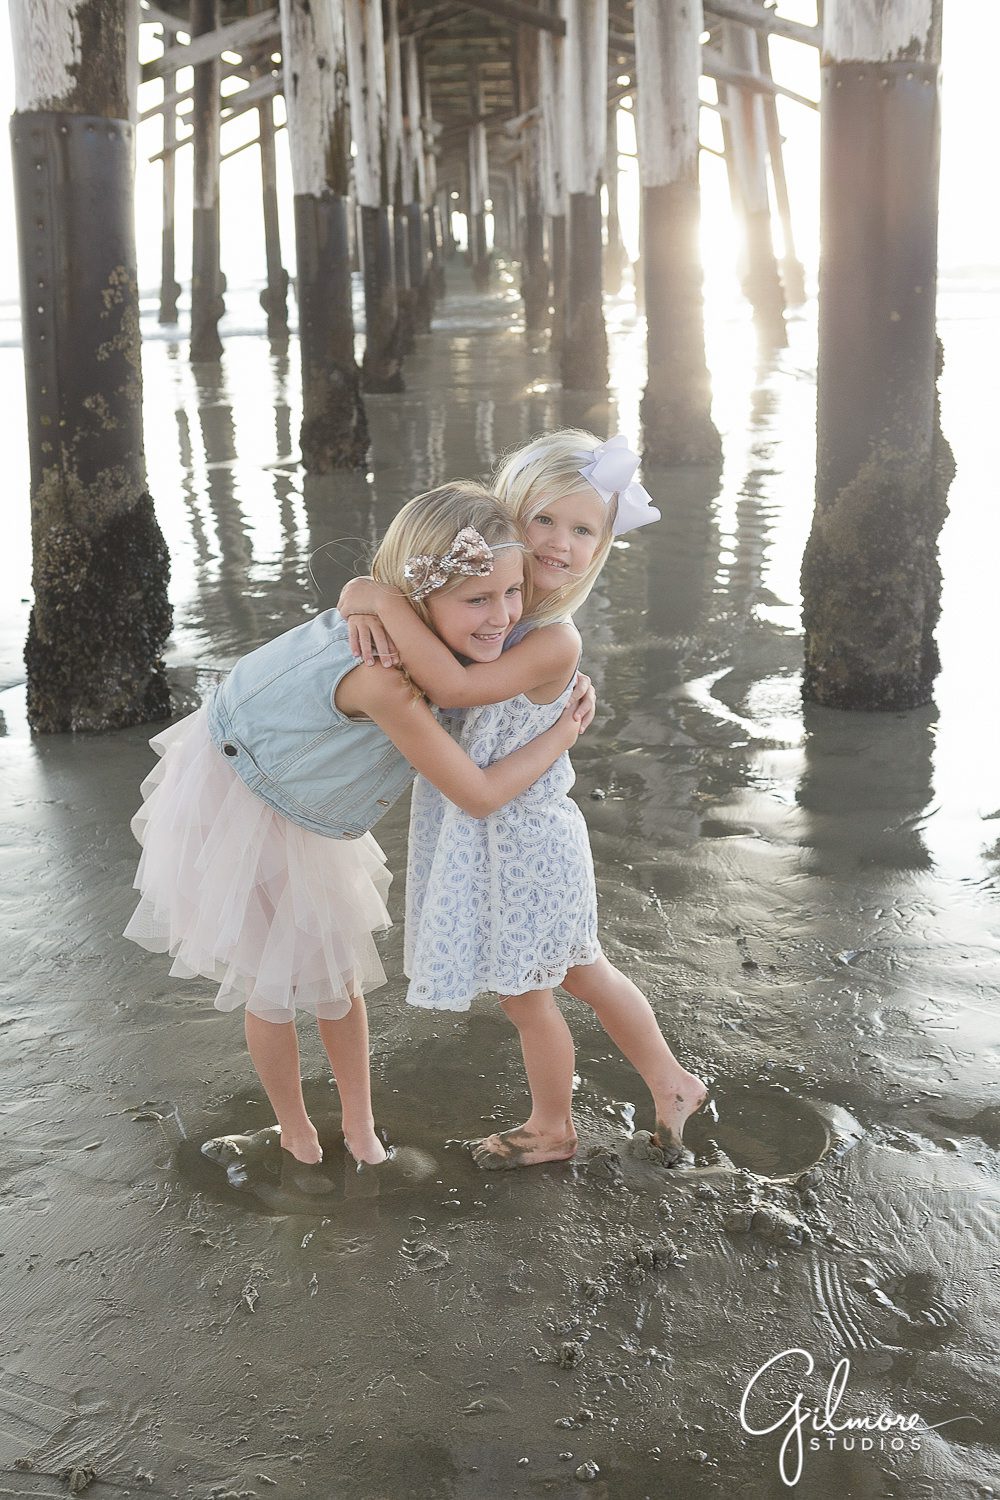 little sister, Newport Beach Family Vacation, children's photographer, Newport Beach Pier